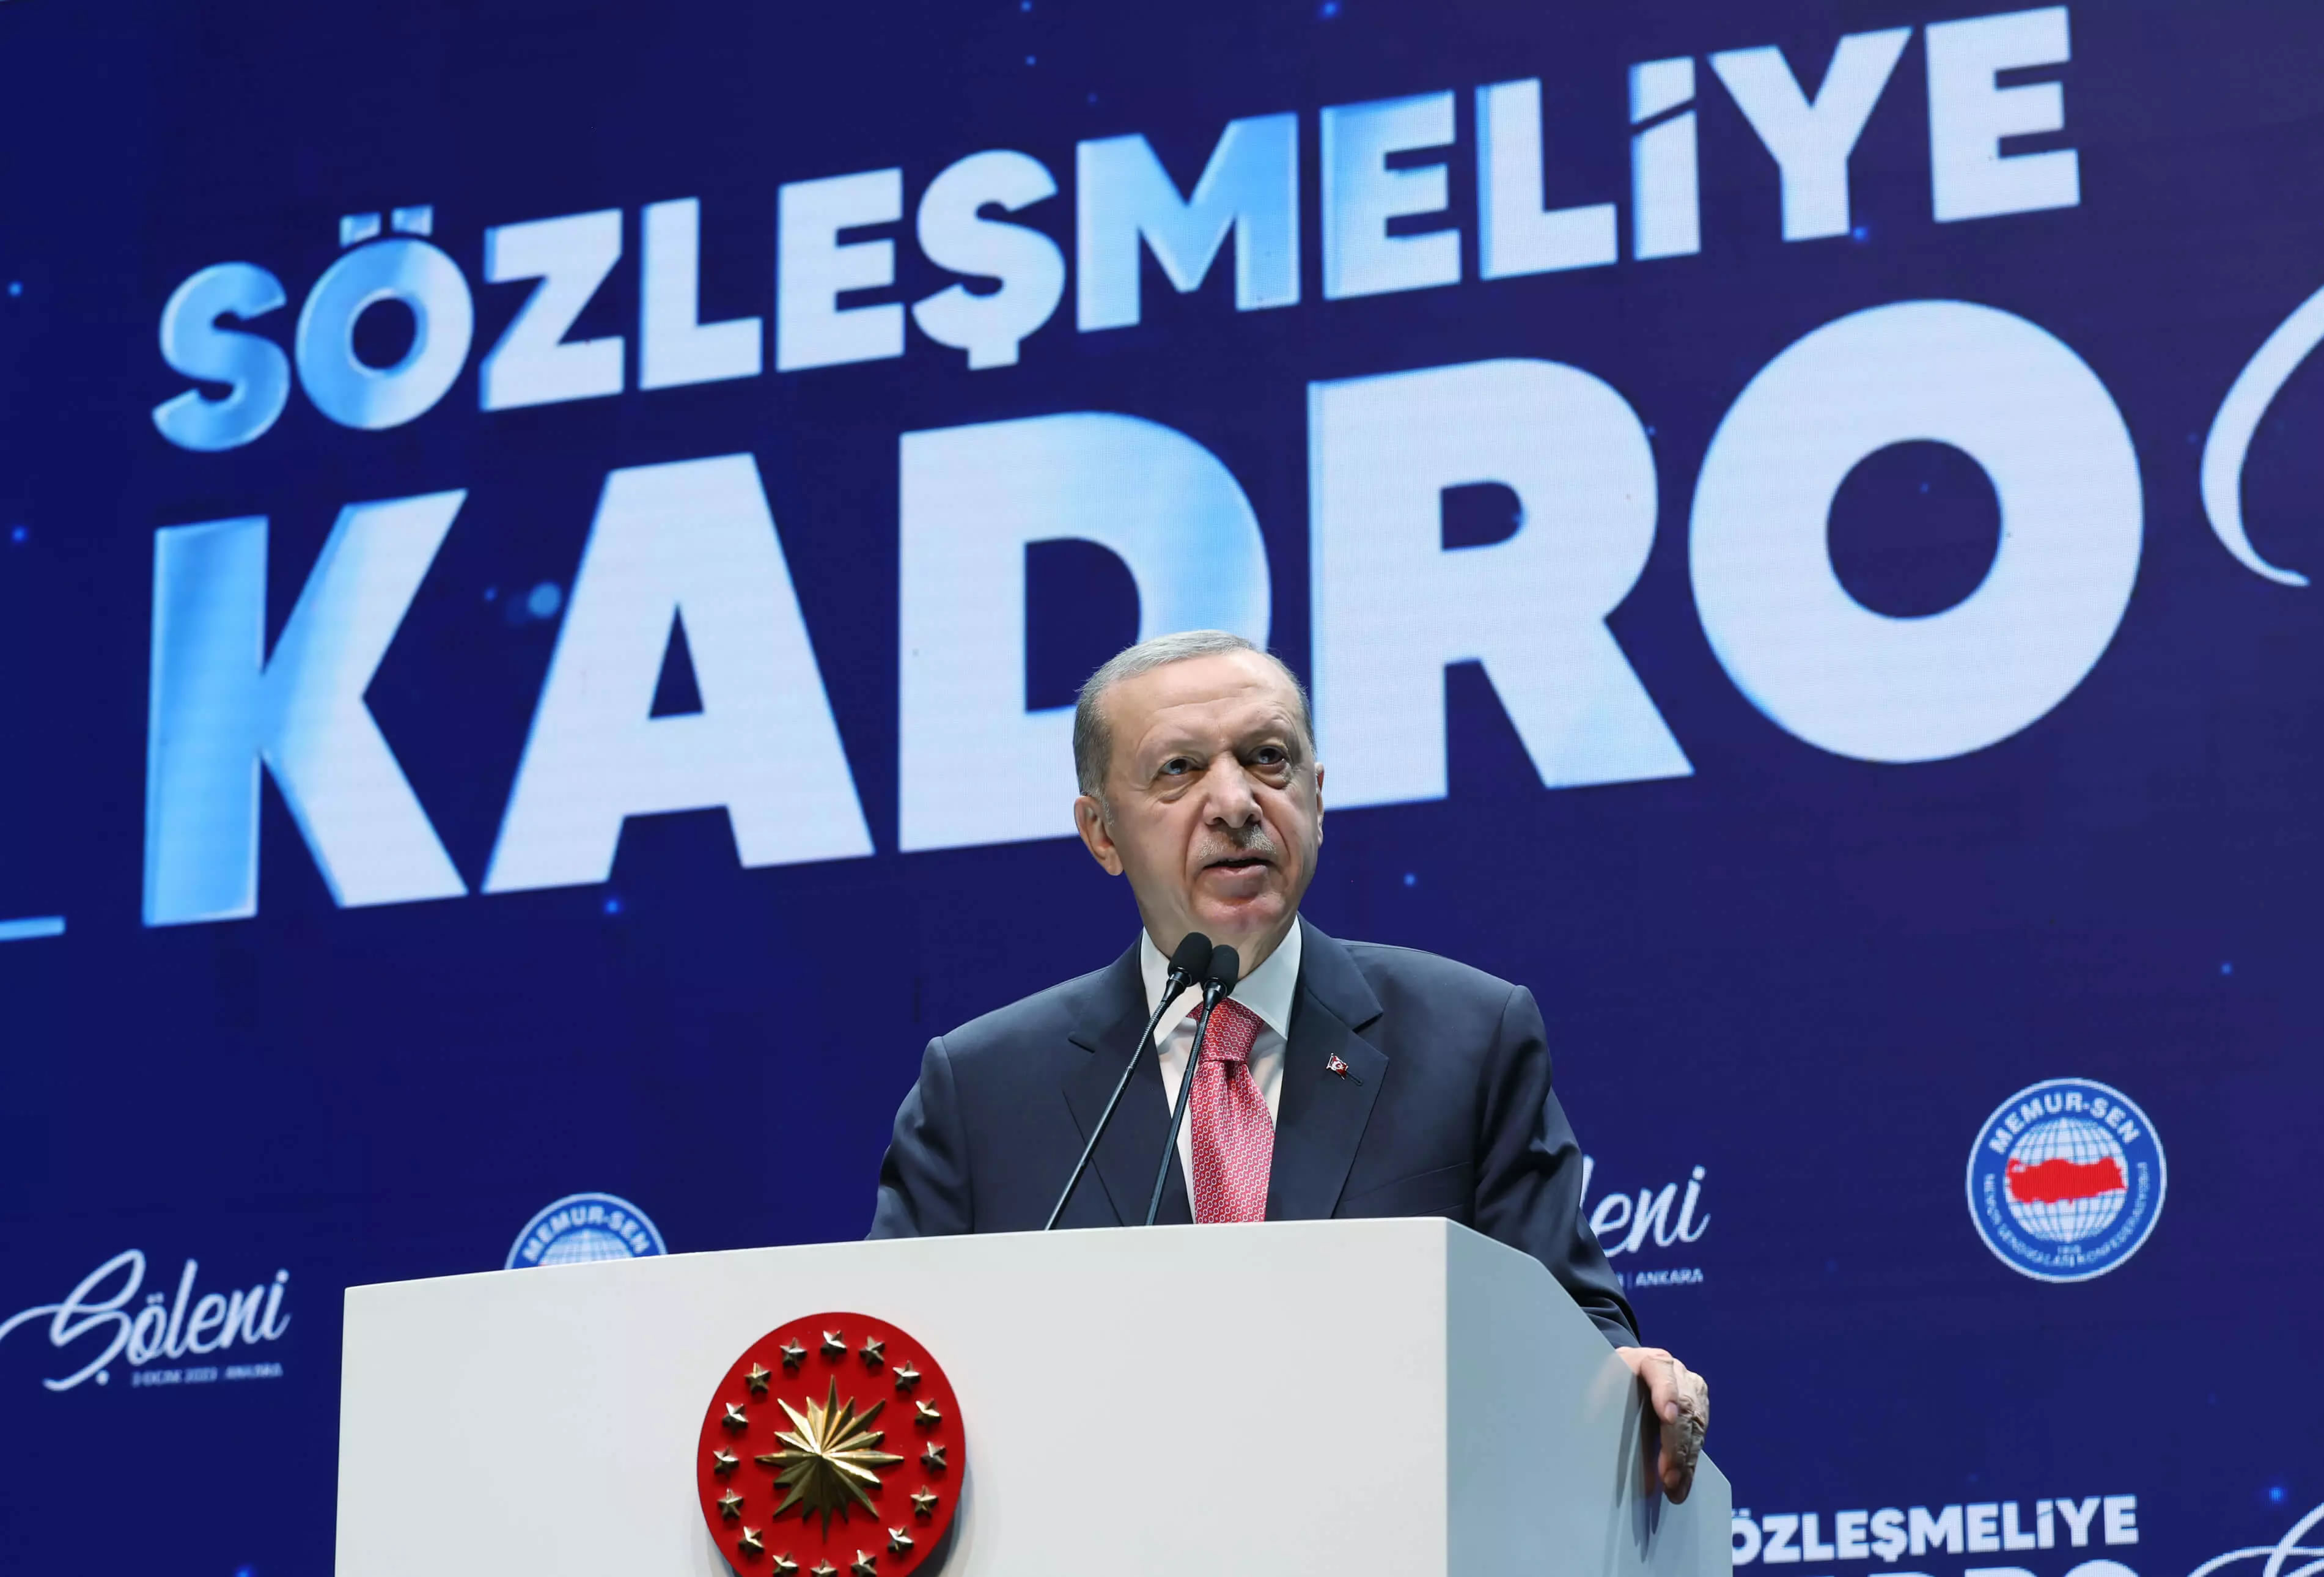 Cumhurbaşkanı Erdoğan, “Sözleşmeliye Kadro Şöleni Programı“nda konuştu